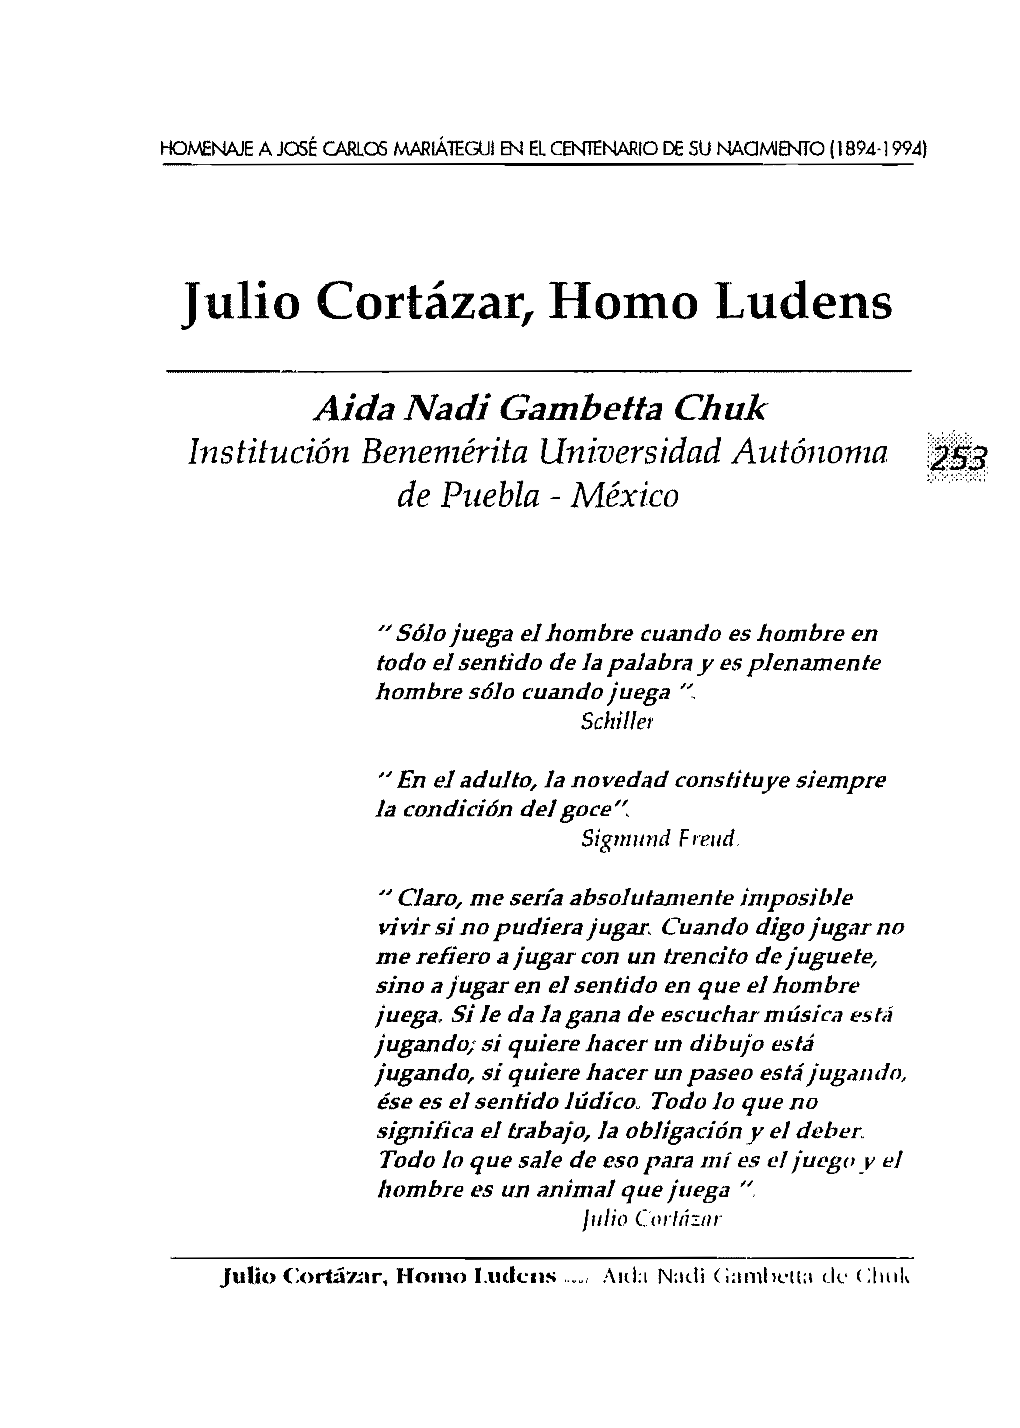 Julio Cortázar, Homo Ludens